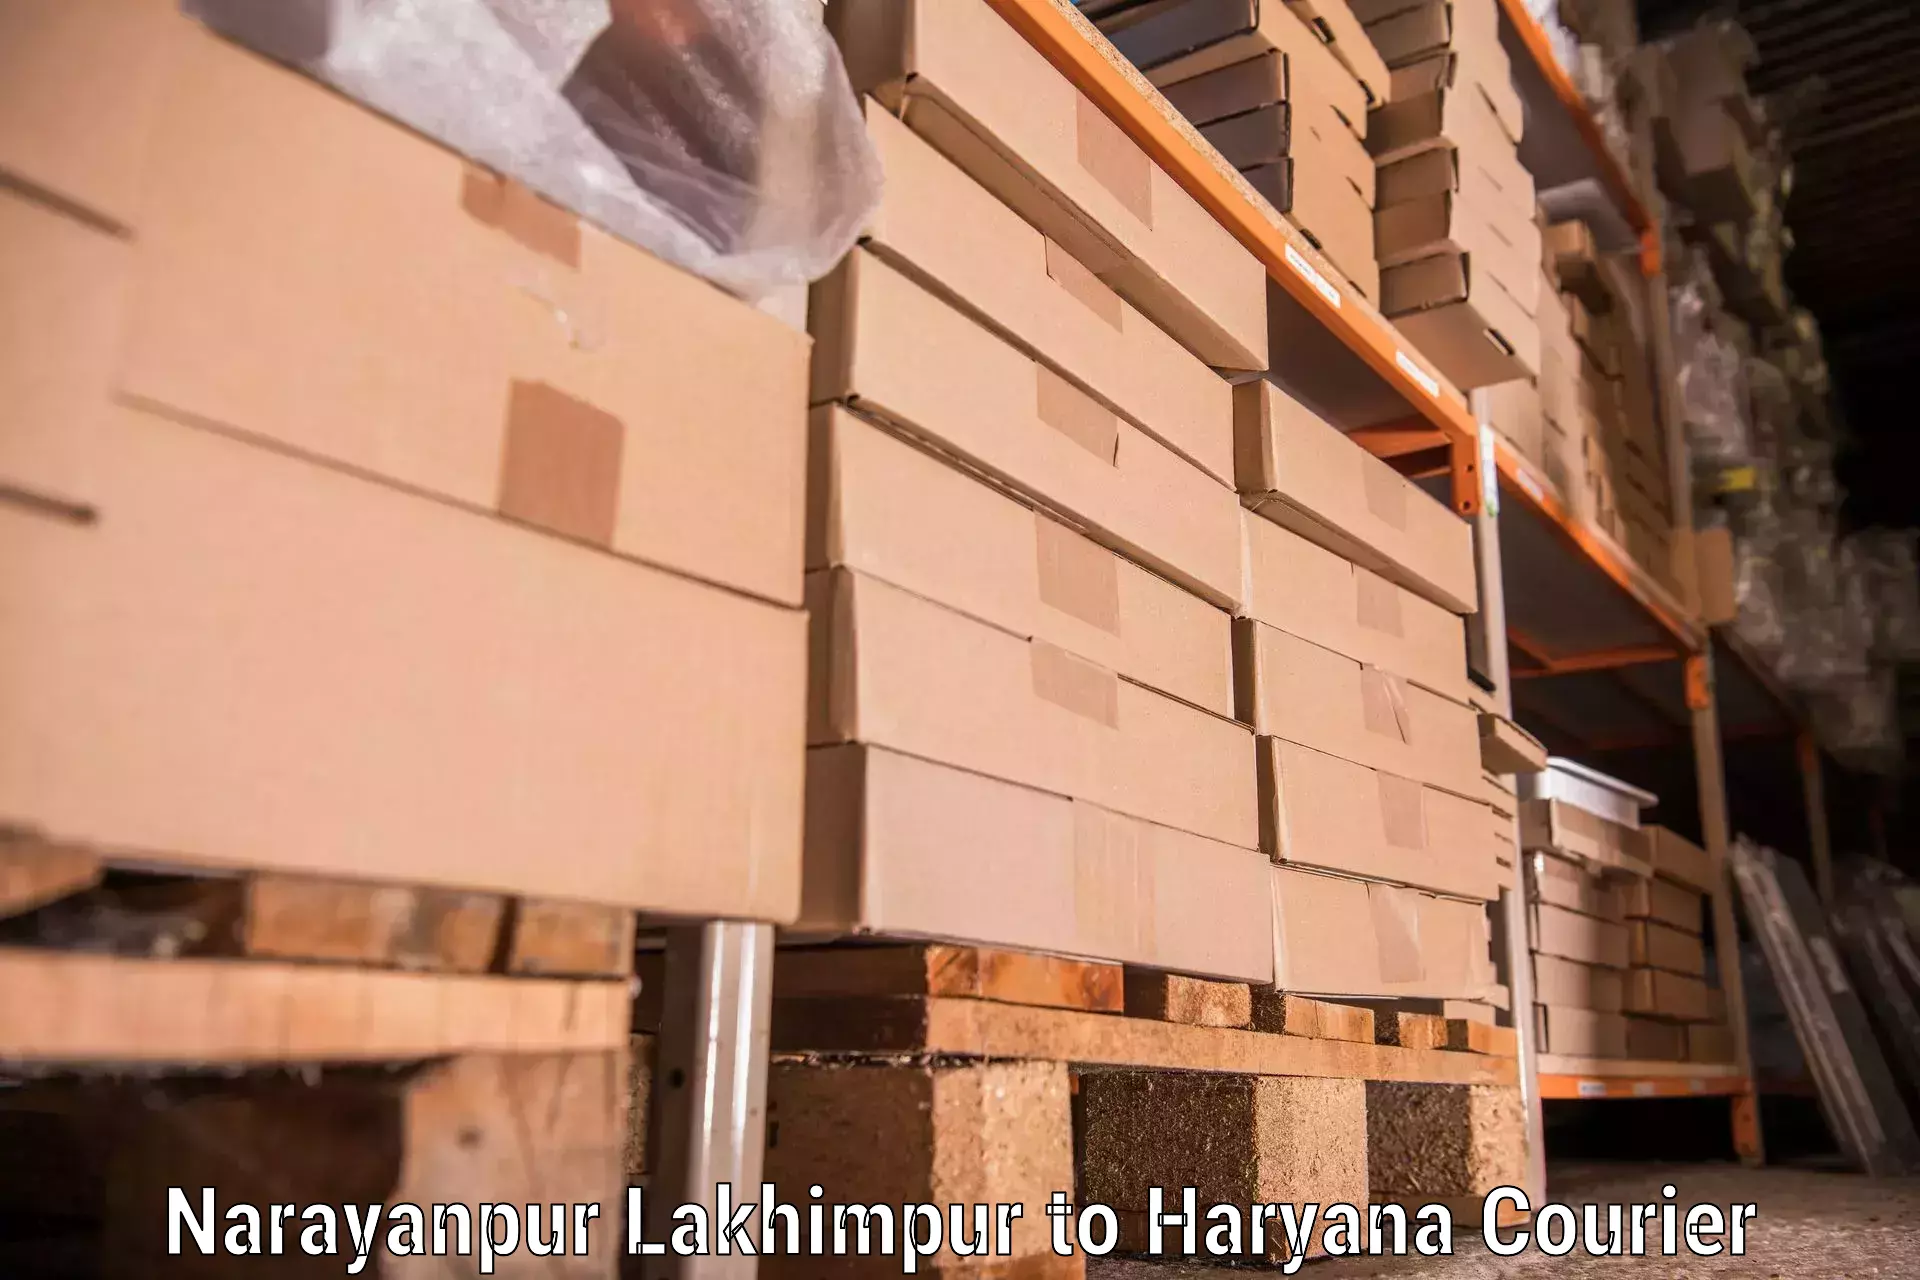 Furniture transport professionals Narayanpur Lakhimpur to Meham